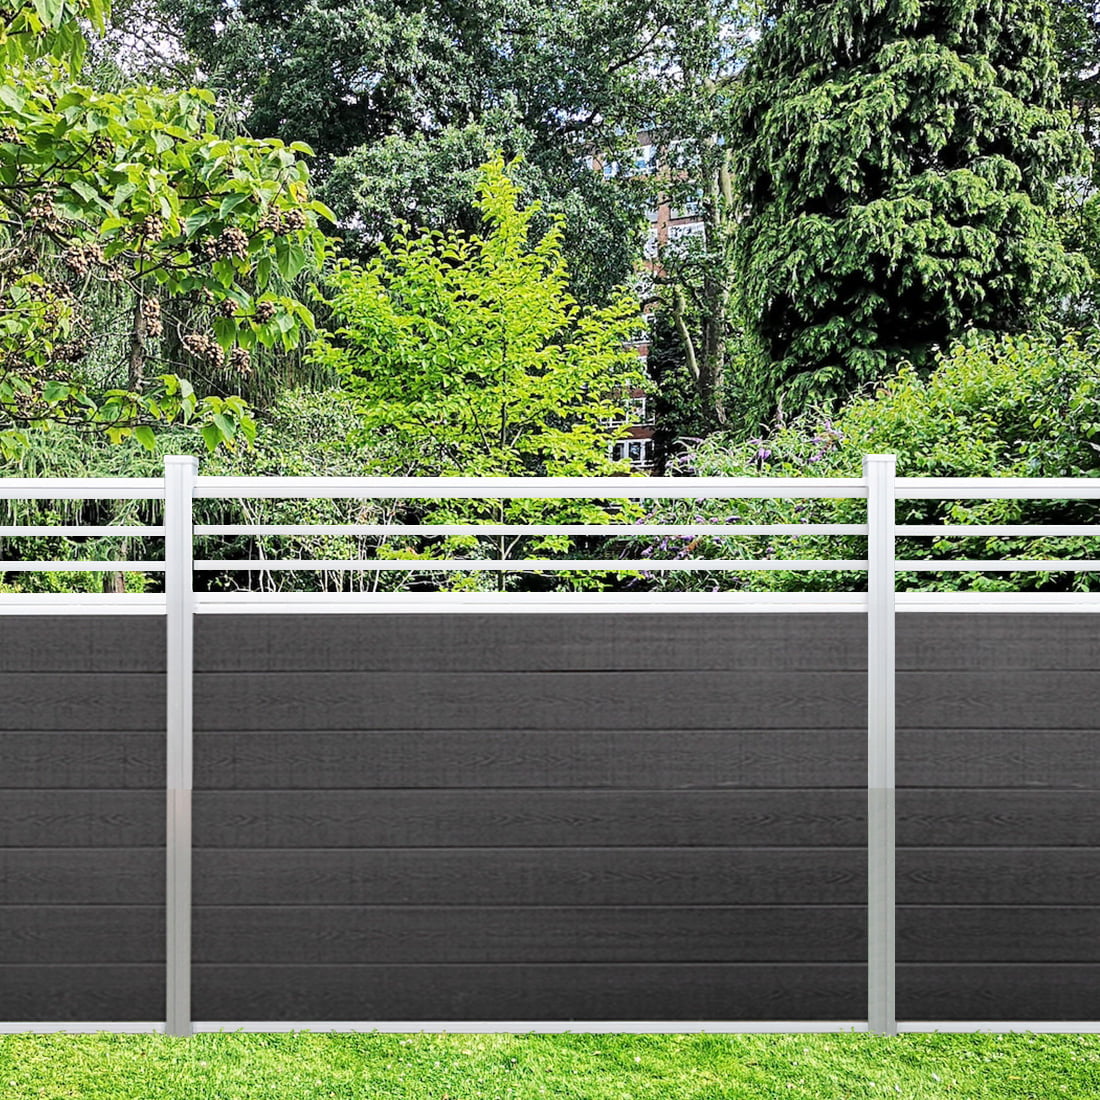 5 H x 6 W Trellis Fence Design Composite Charcoal Natural Aluminum